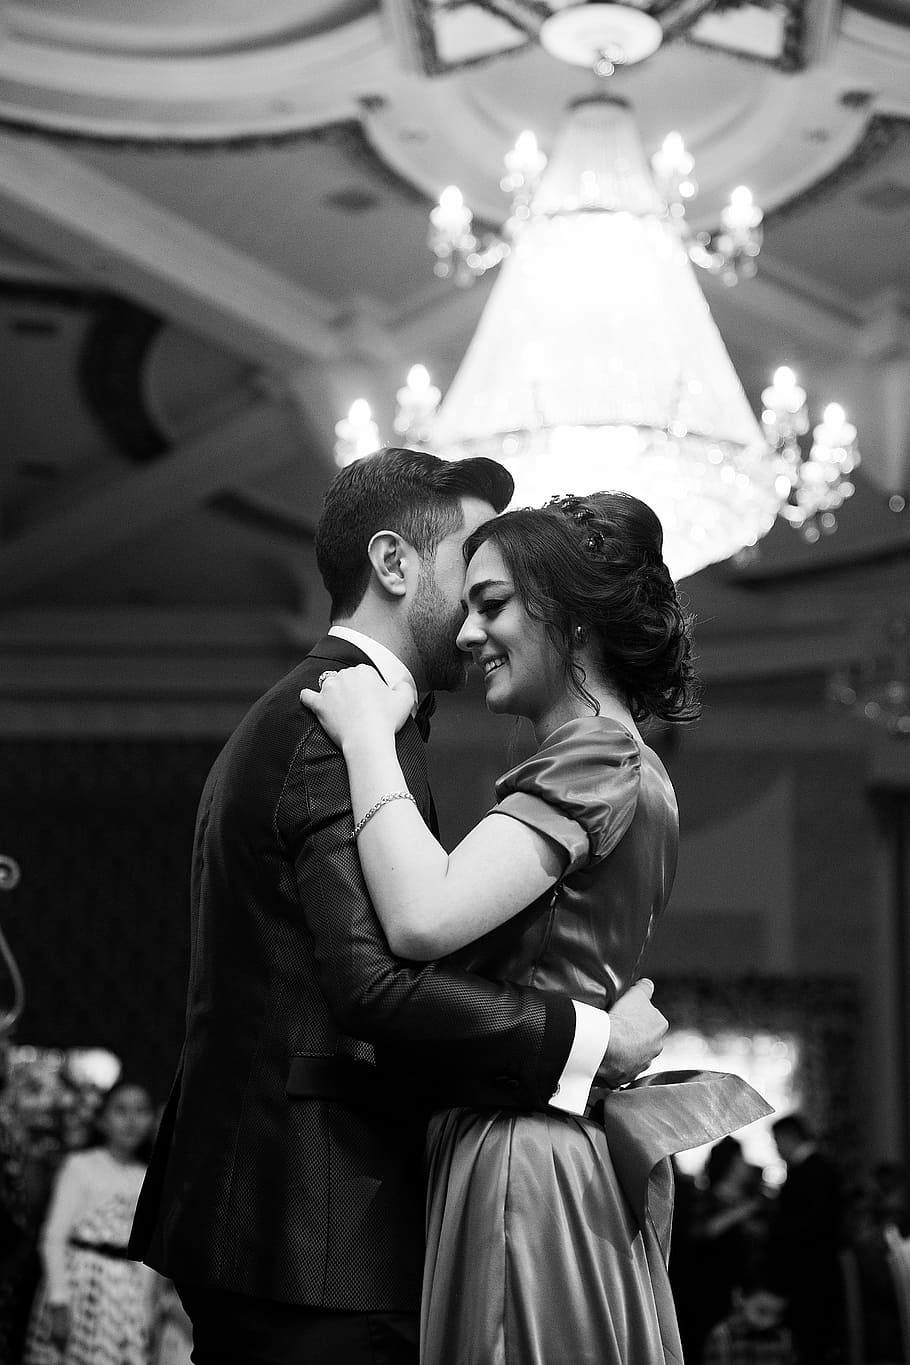 greyscale photography of dancing couple, gray, chandelier, people